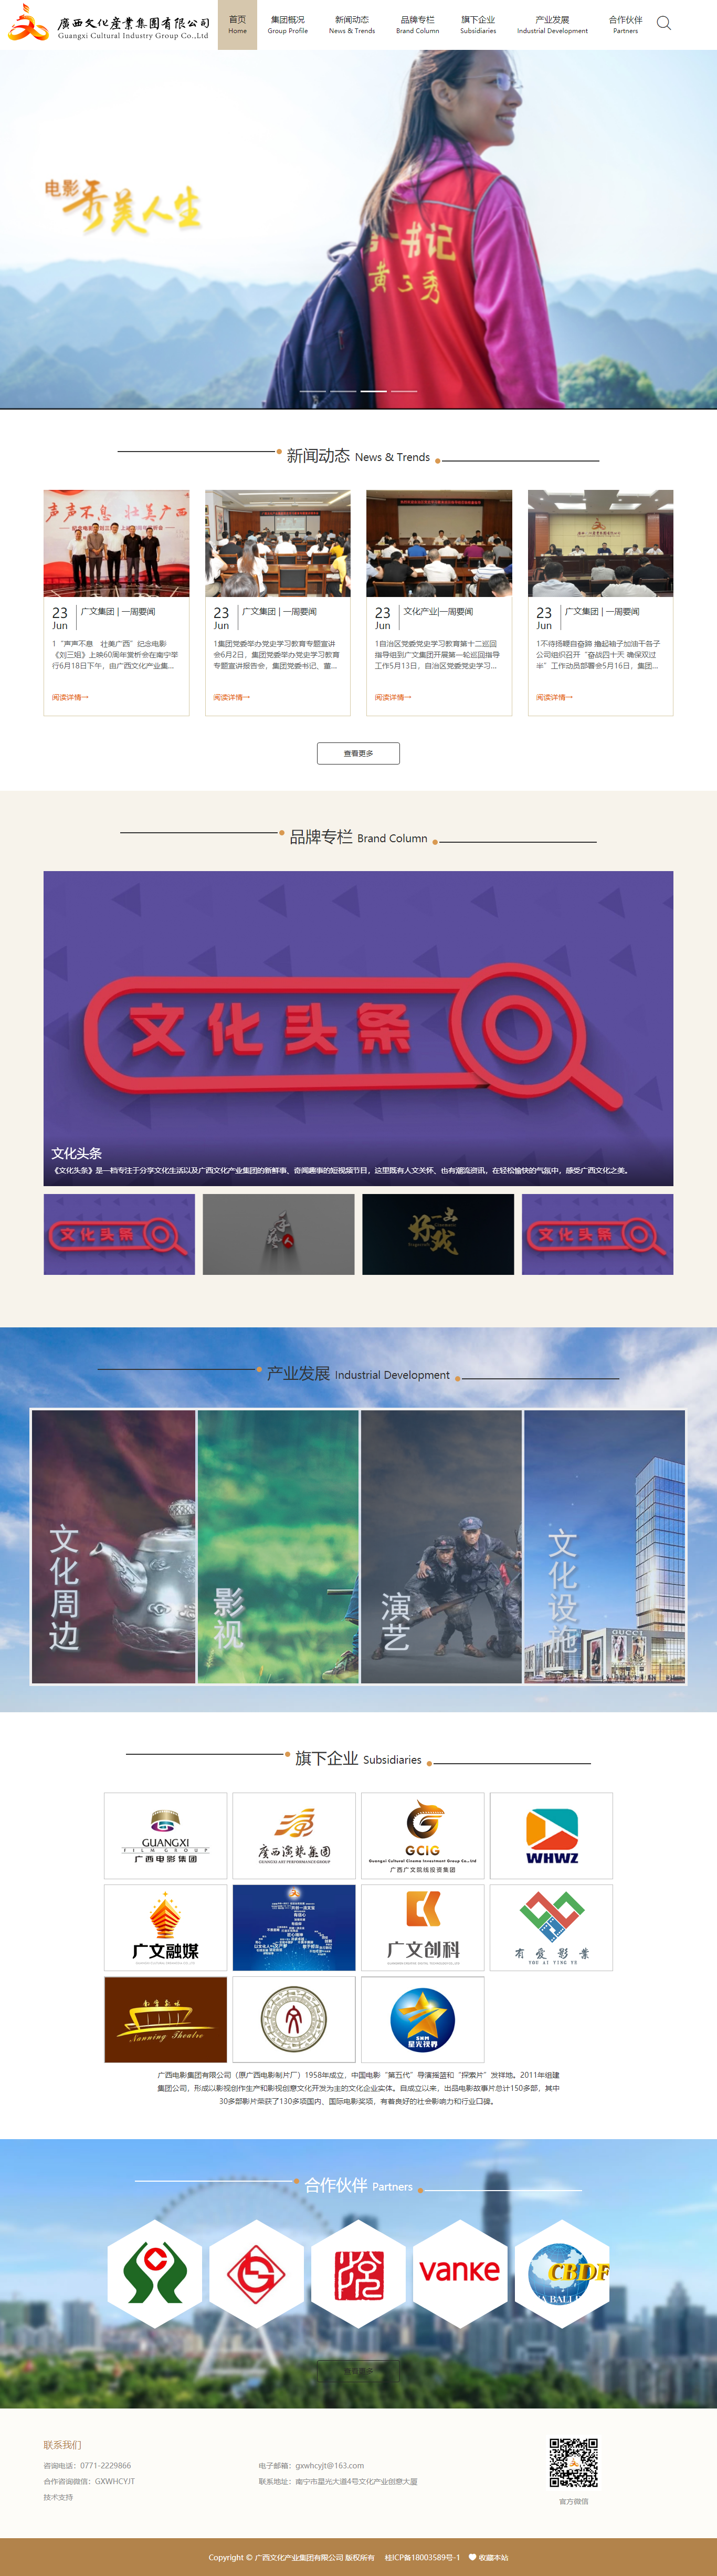 广西文化产业集团有限公司网站案例